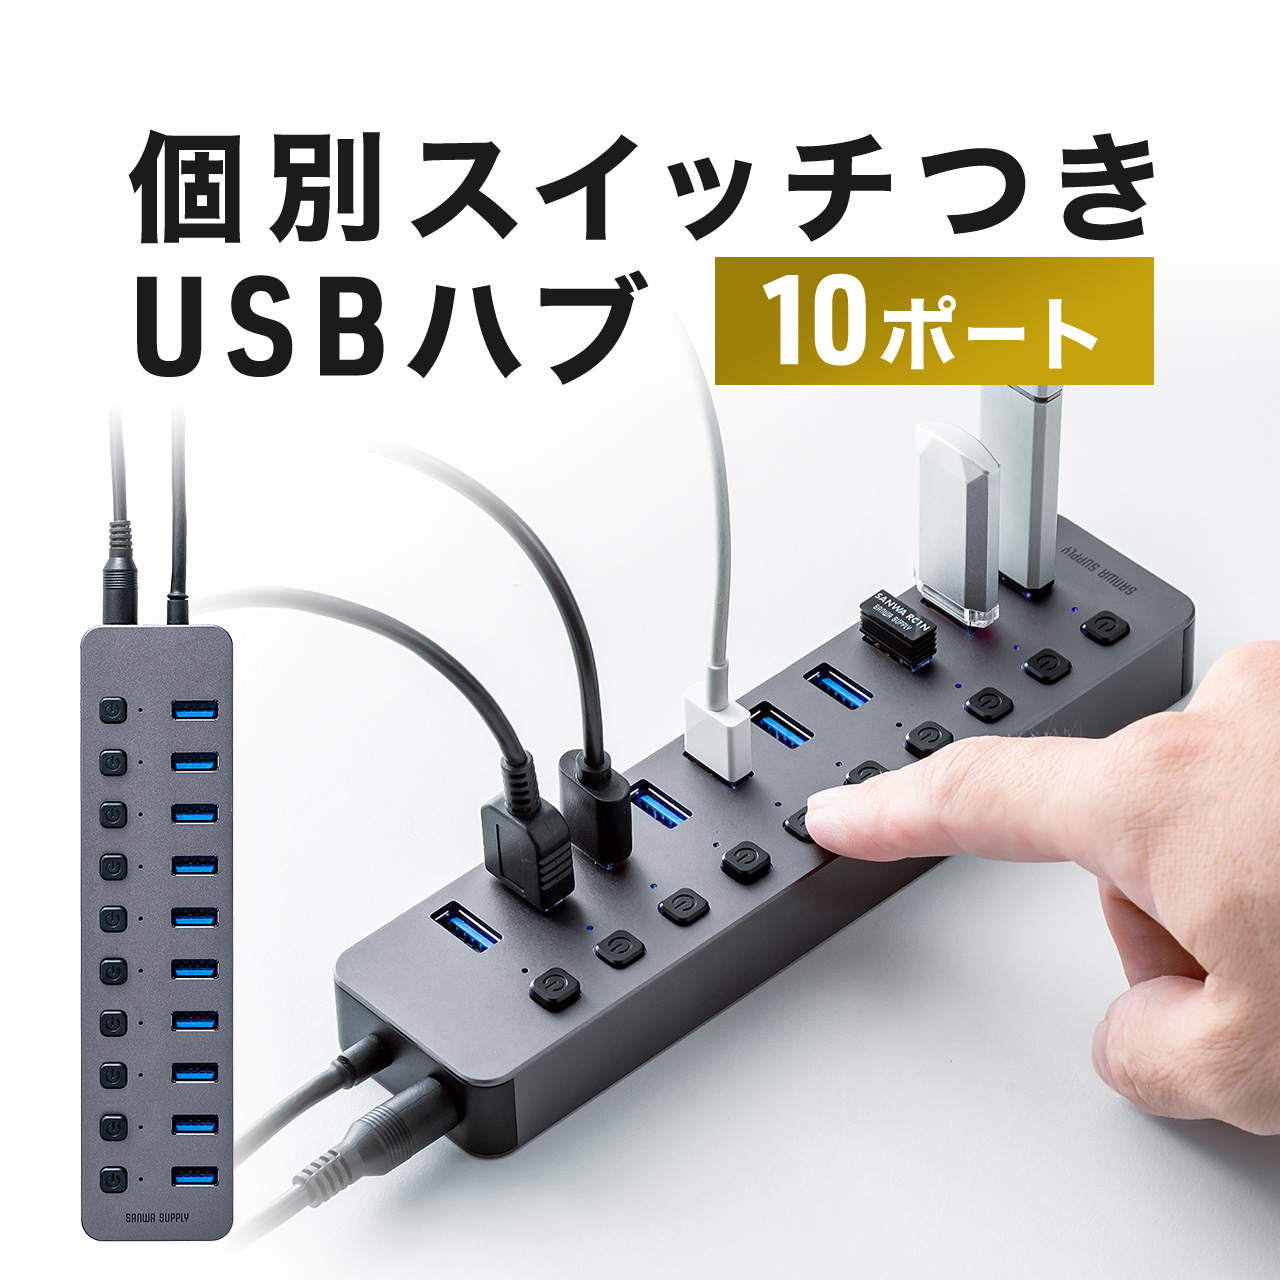 USBハブ 10ポート ACアダプタ付 セルフパワー USB 充電器 個別スイッチ付 スマホ iPhone タブレット iPad 充電 高速 データ転送 USB3.2 400-HUBA23GM